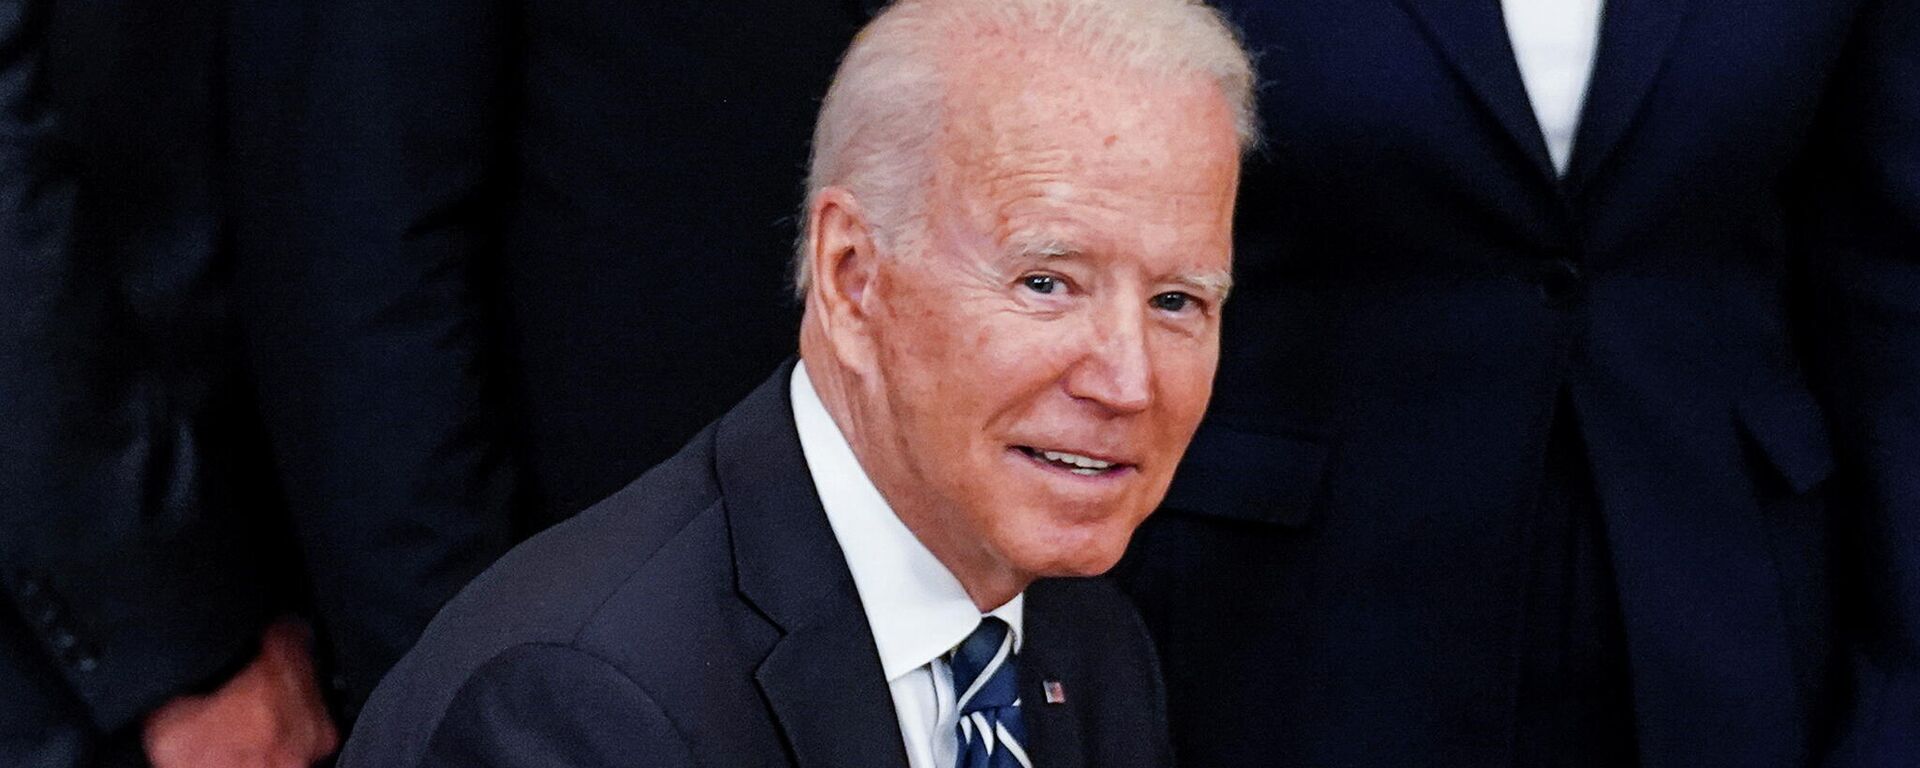 Joe Biden, presidente de Estados Unidos - Sputnik Mundo, 1920, 04.07.2021